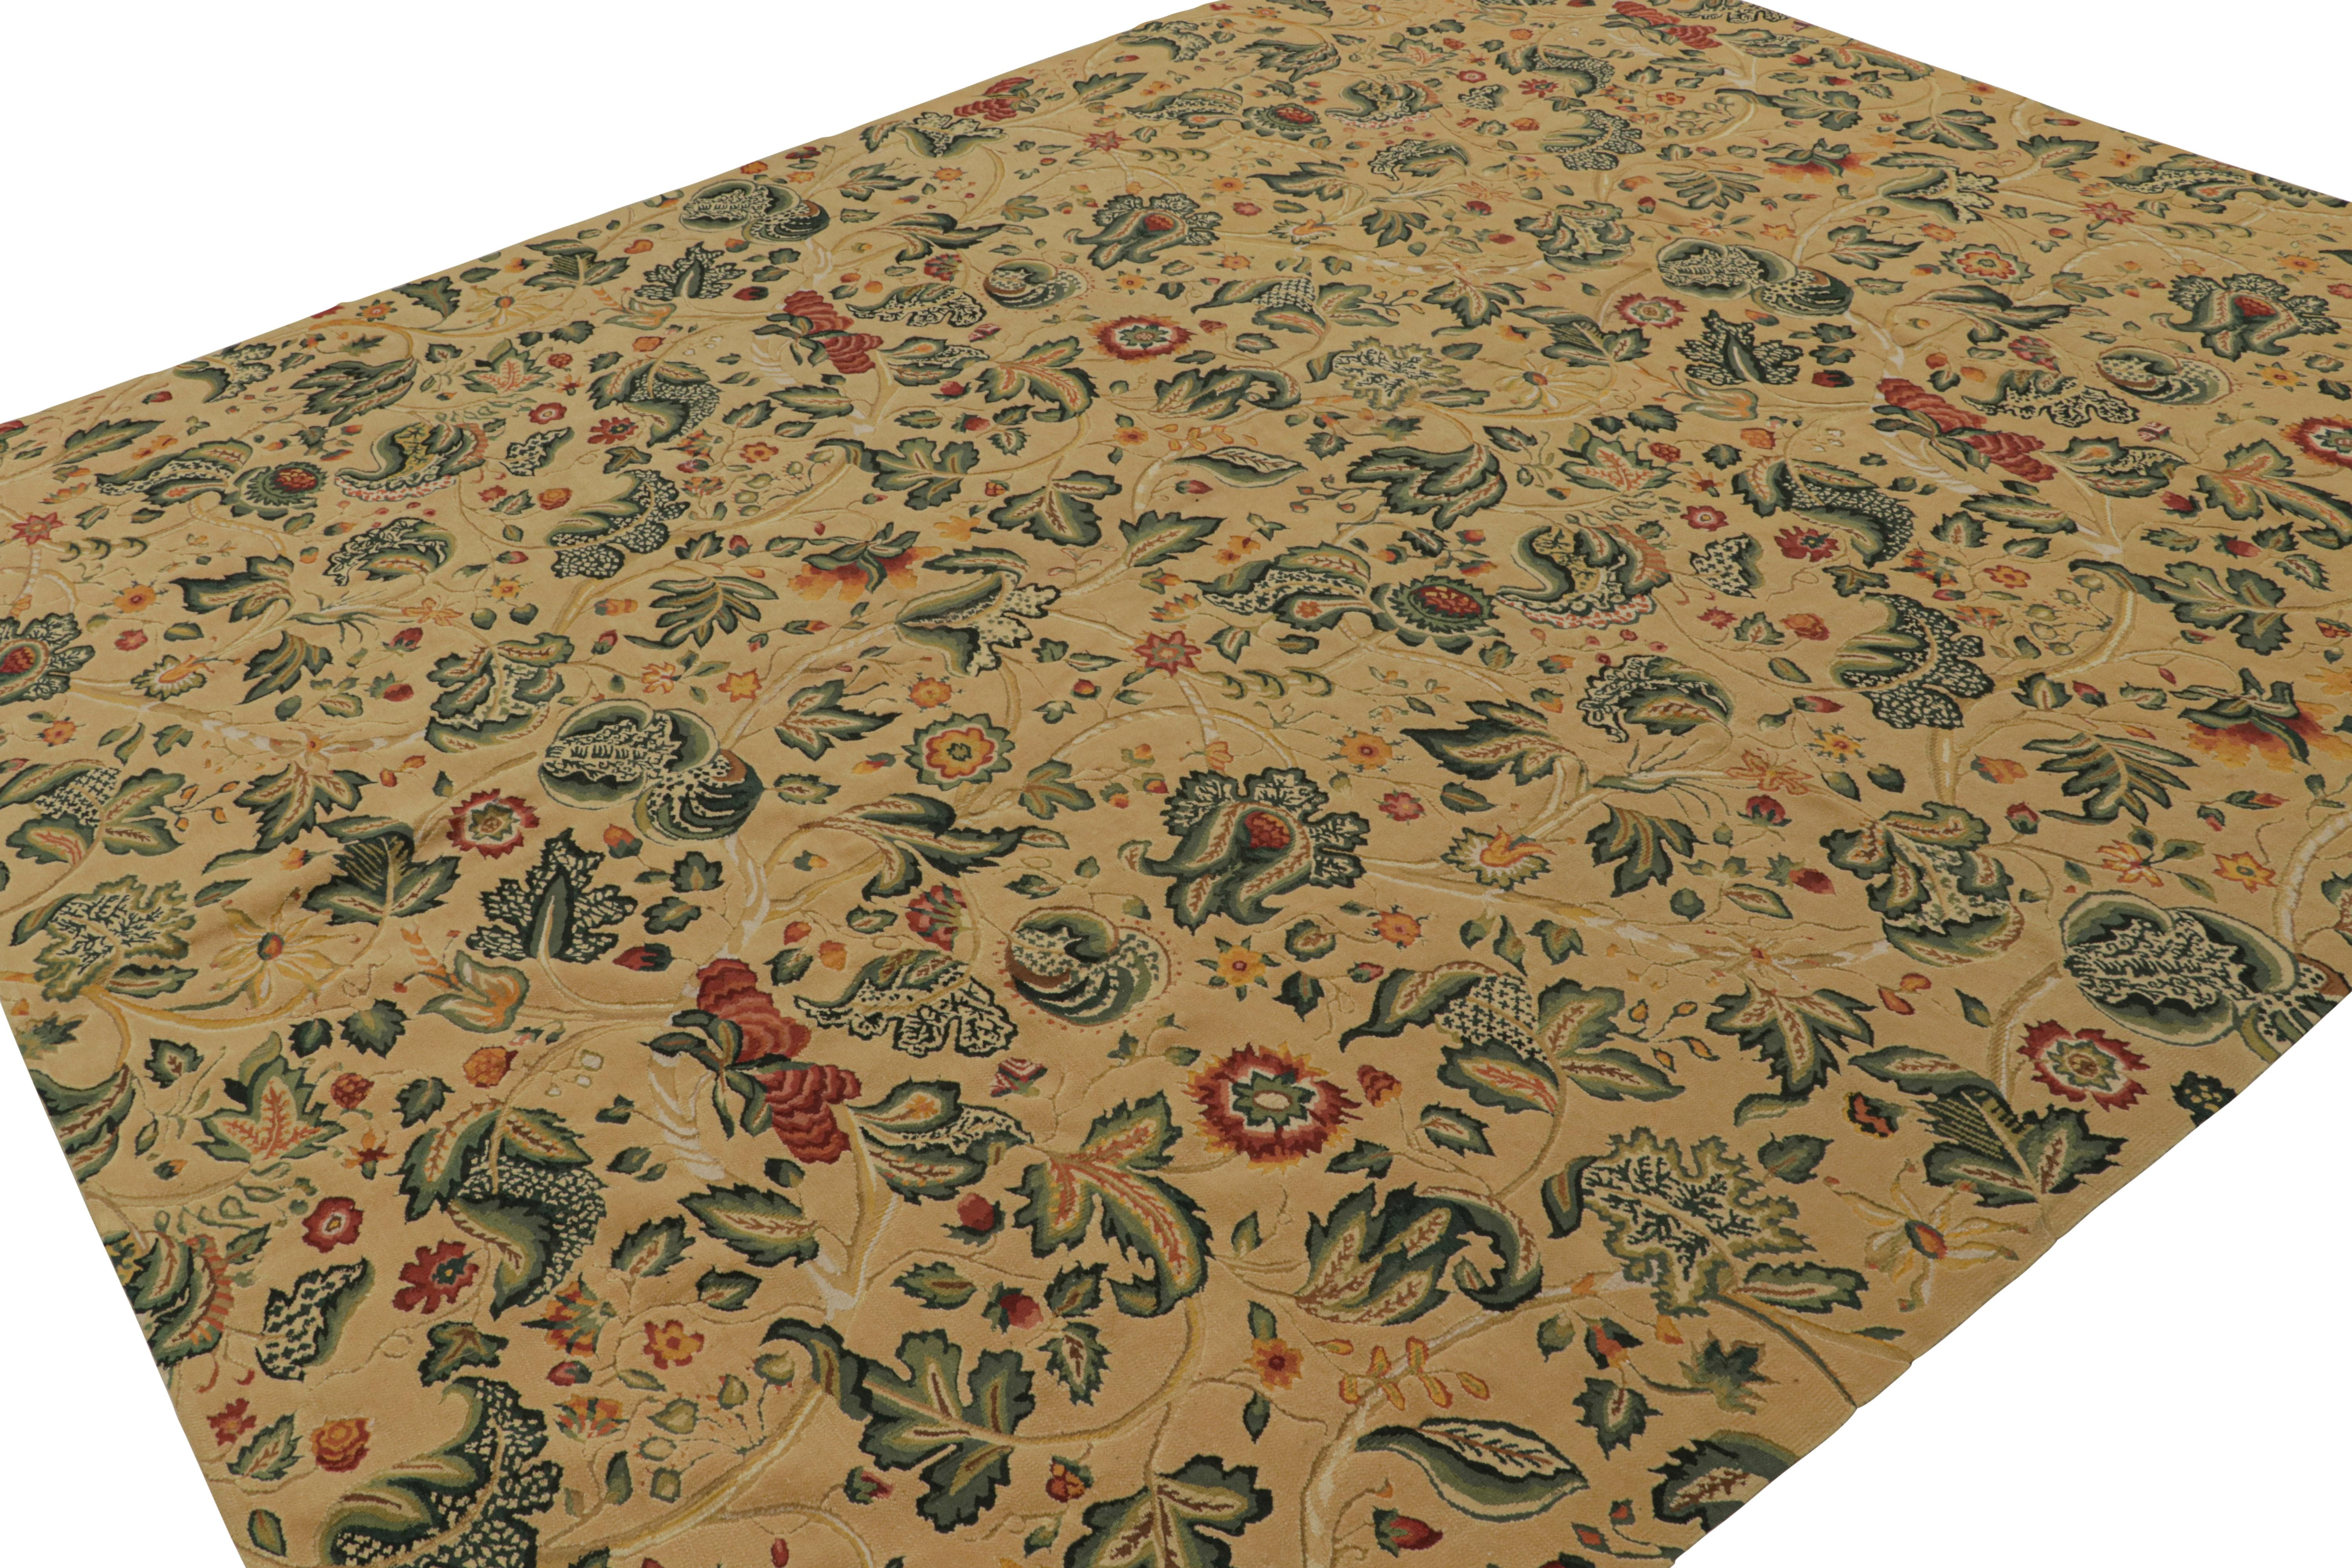 Dieser 10x11 große europäische Flachgewebe-Teppich aus Wolle wurde von englischen Tudor-Teppichen und Wandteppichen aus dem 18. Jahrhundert inspiriert. Das Design besteht aus floralen Mustern in Grün, Rot, Gold und blaugrünen Akzenten auf dem